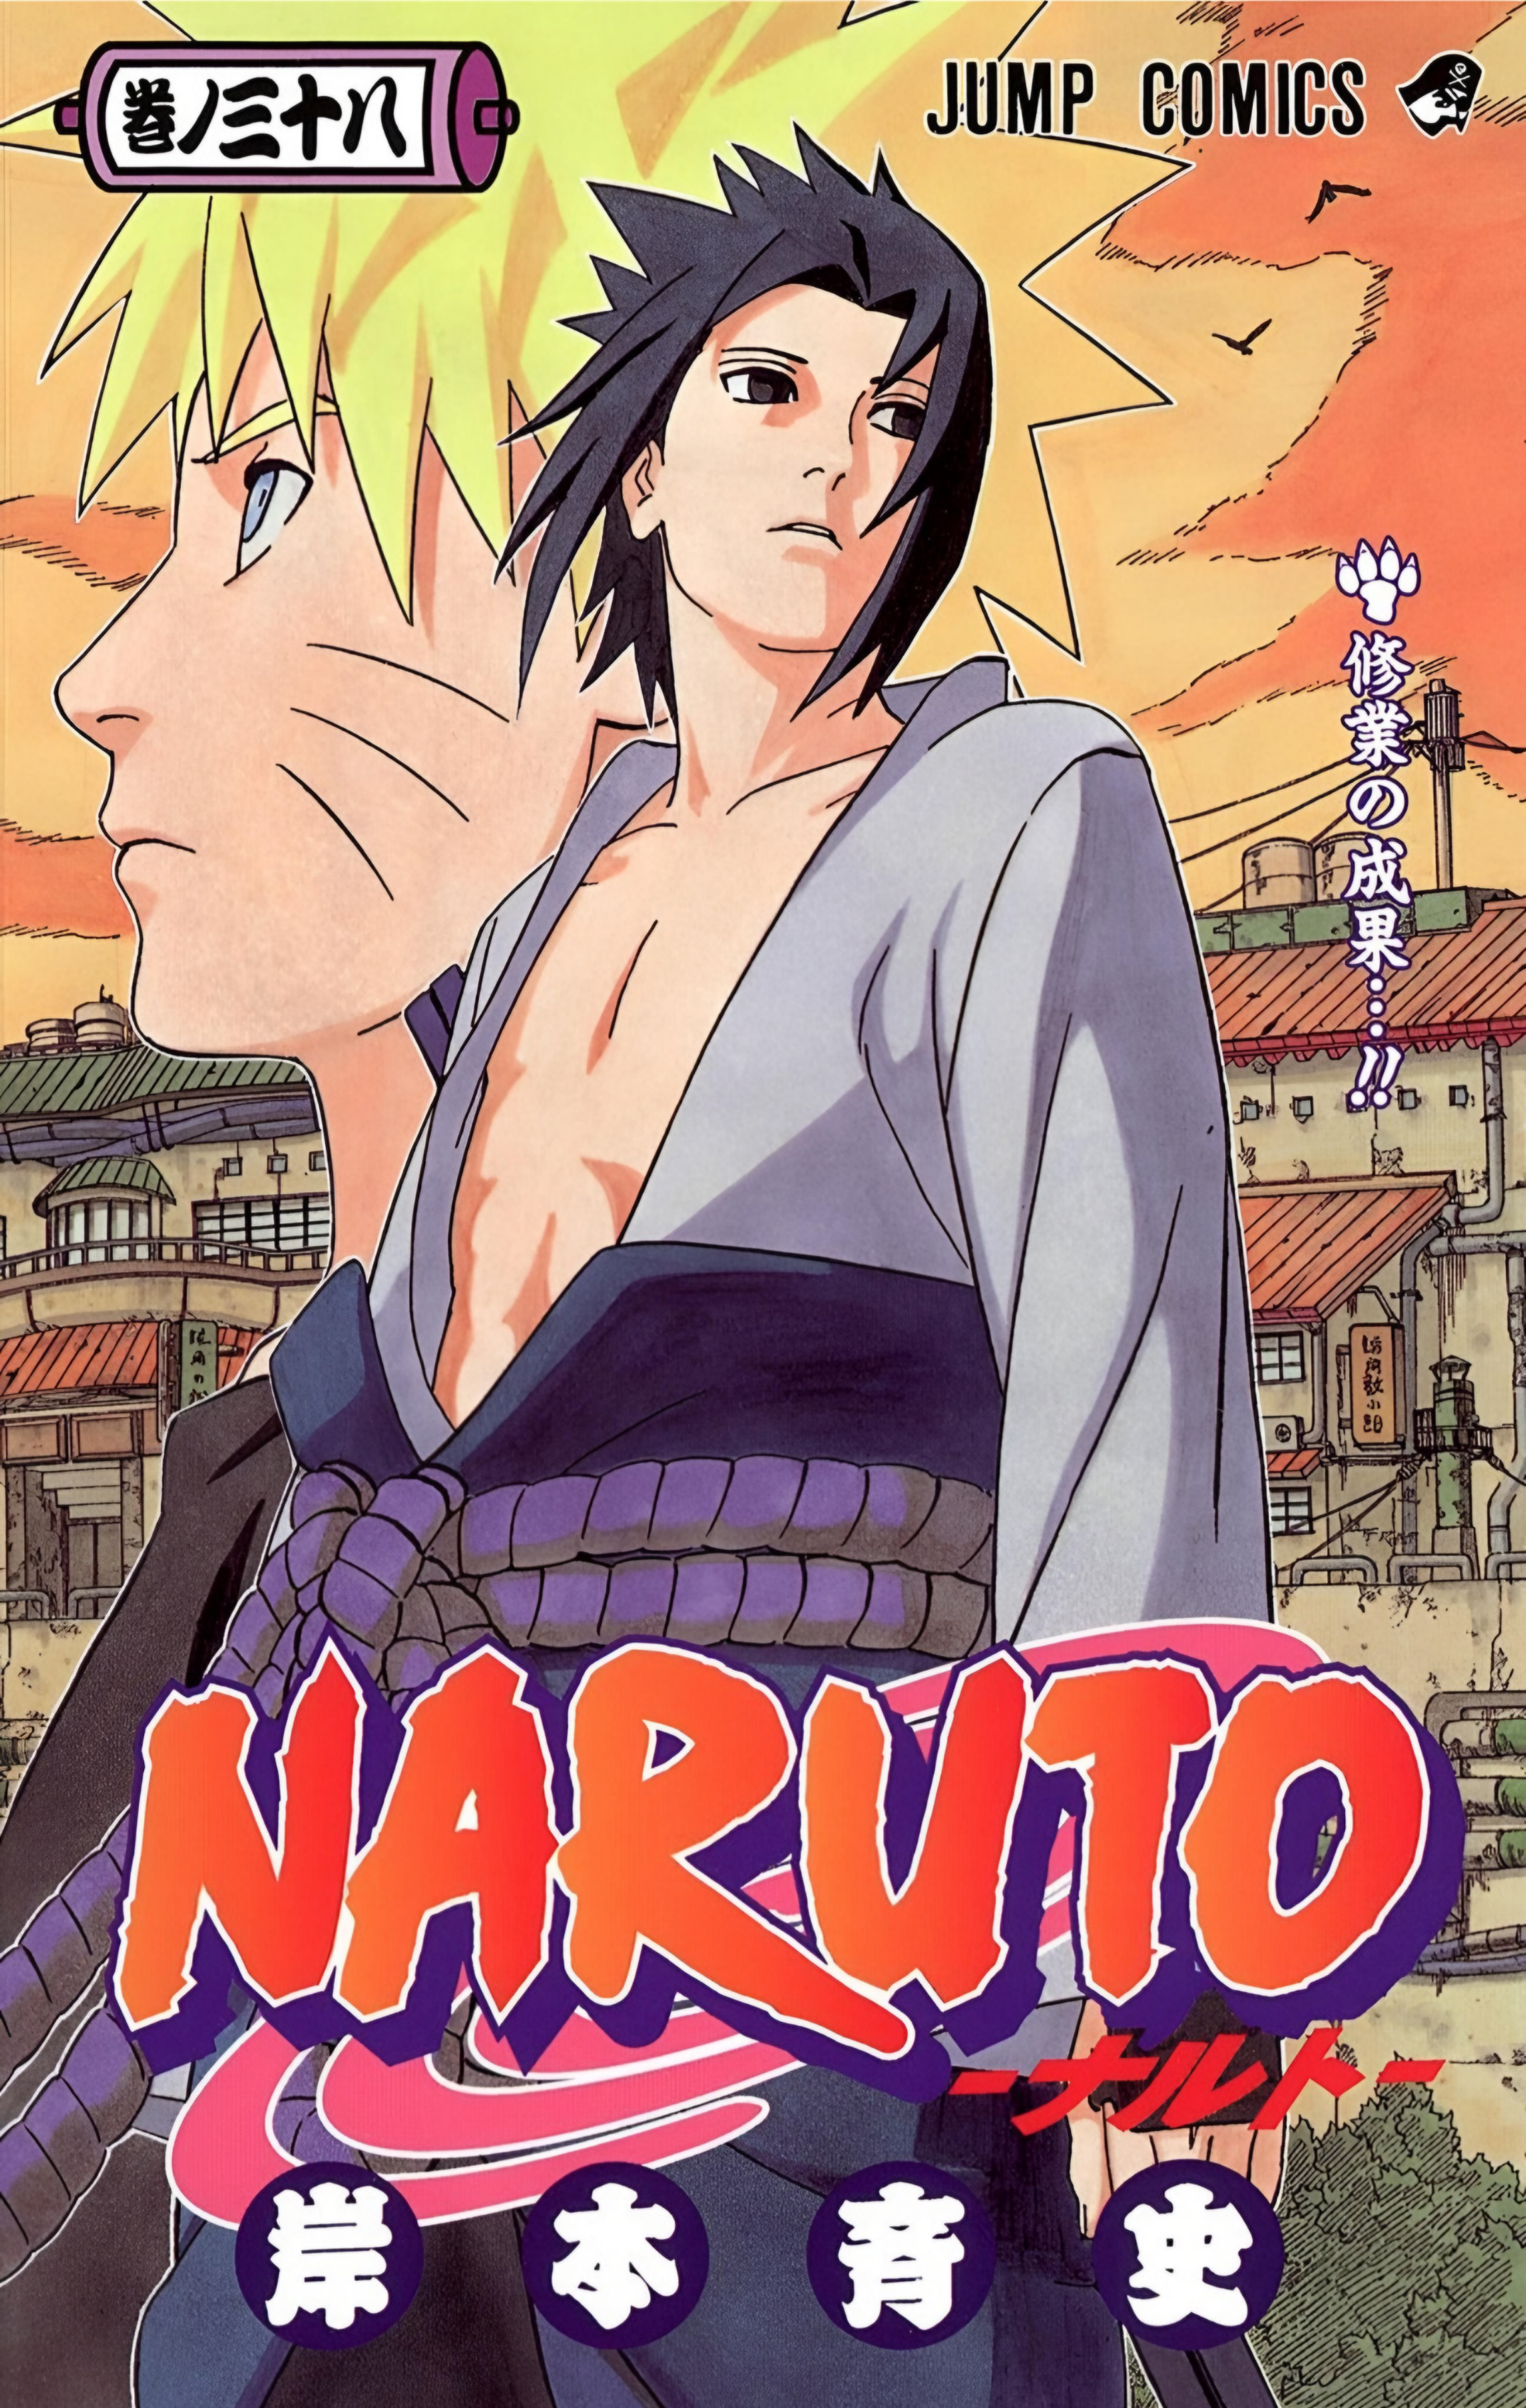 Buscando informações na Wikipédia: Lista de episódios de Naruto